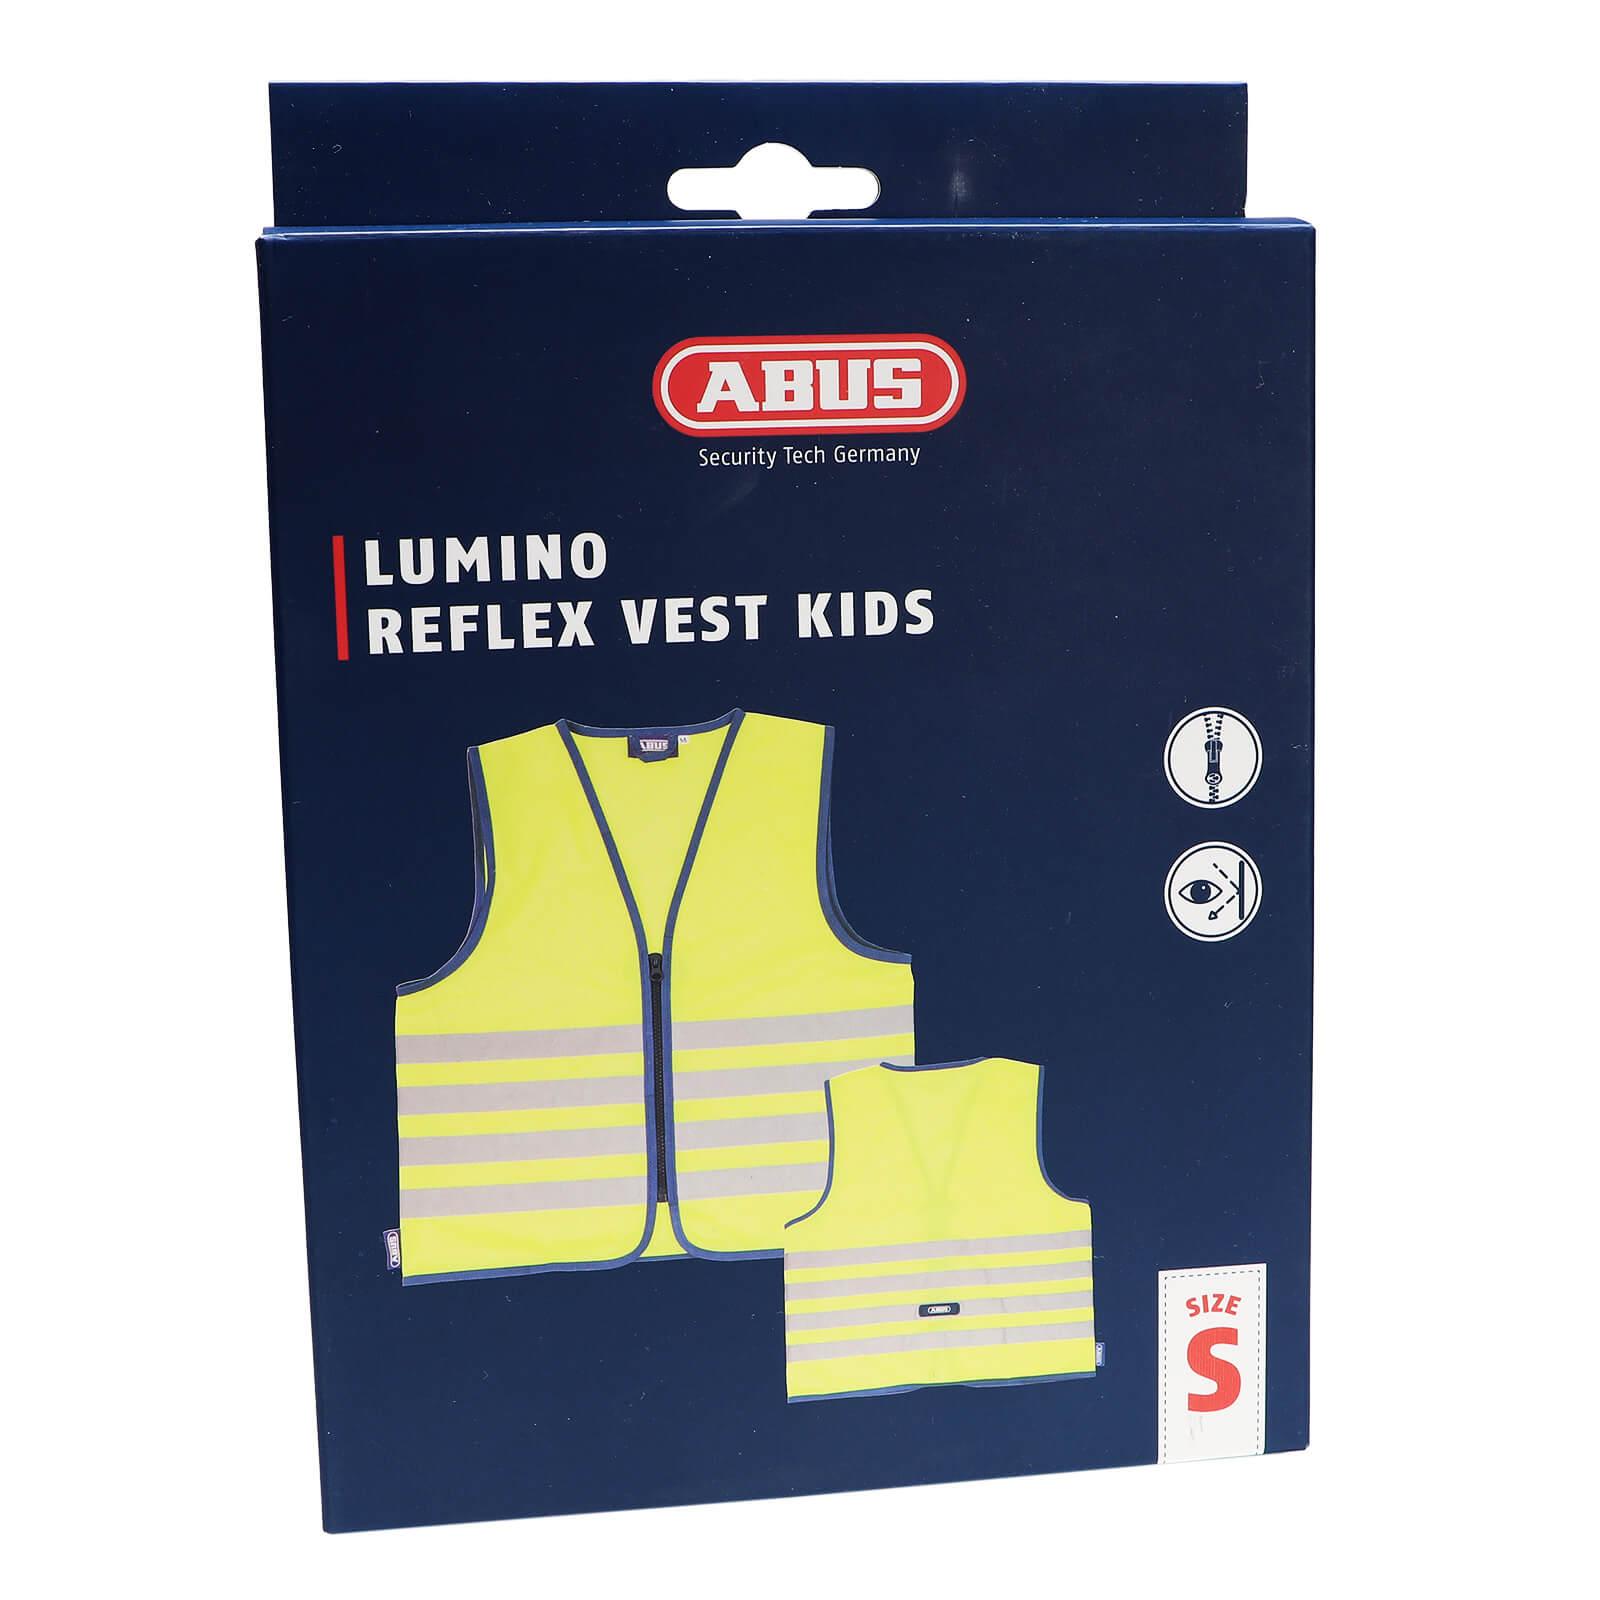 Abus Warnweste Lumino Reflex Vest Kids yellow